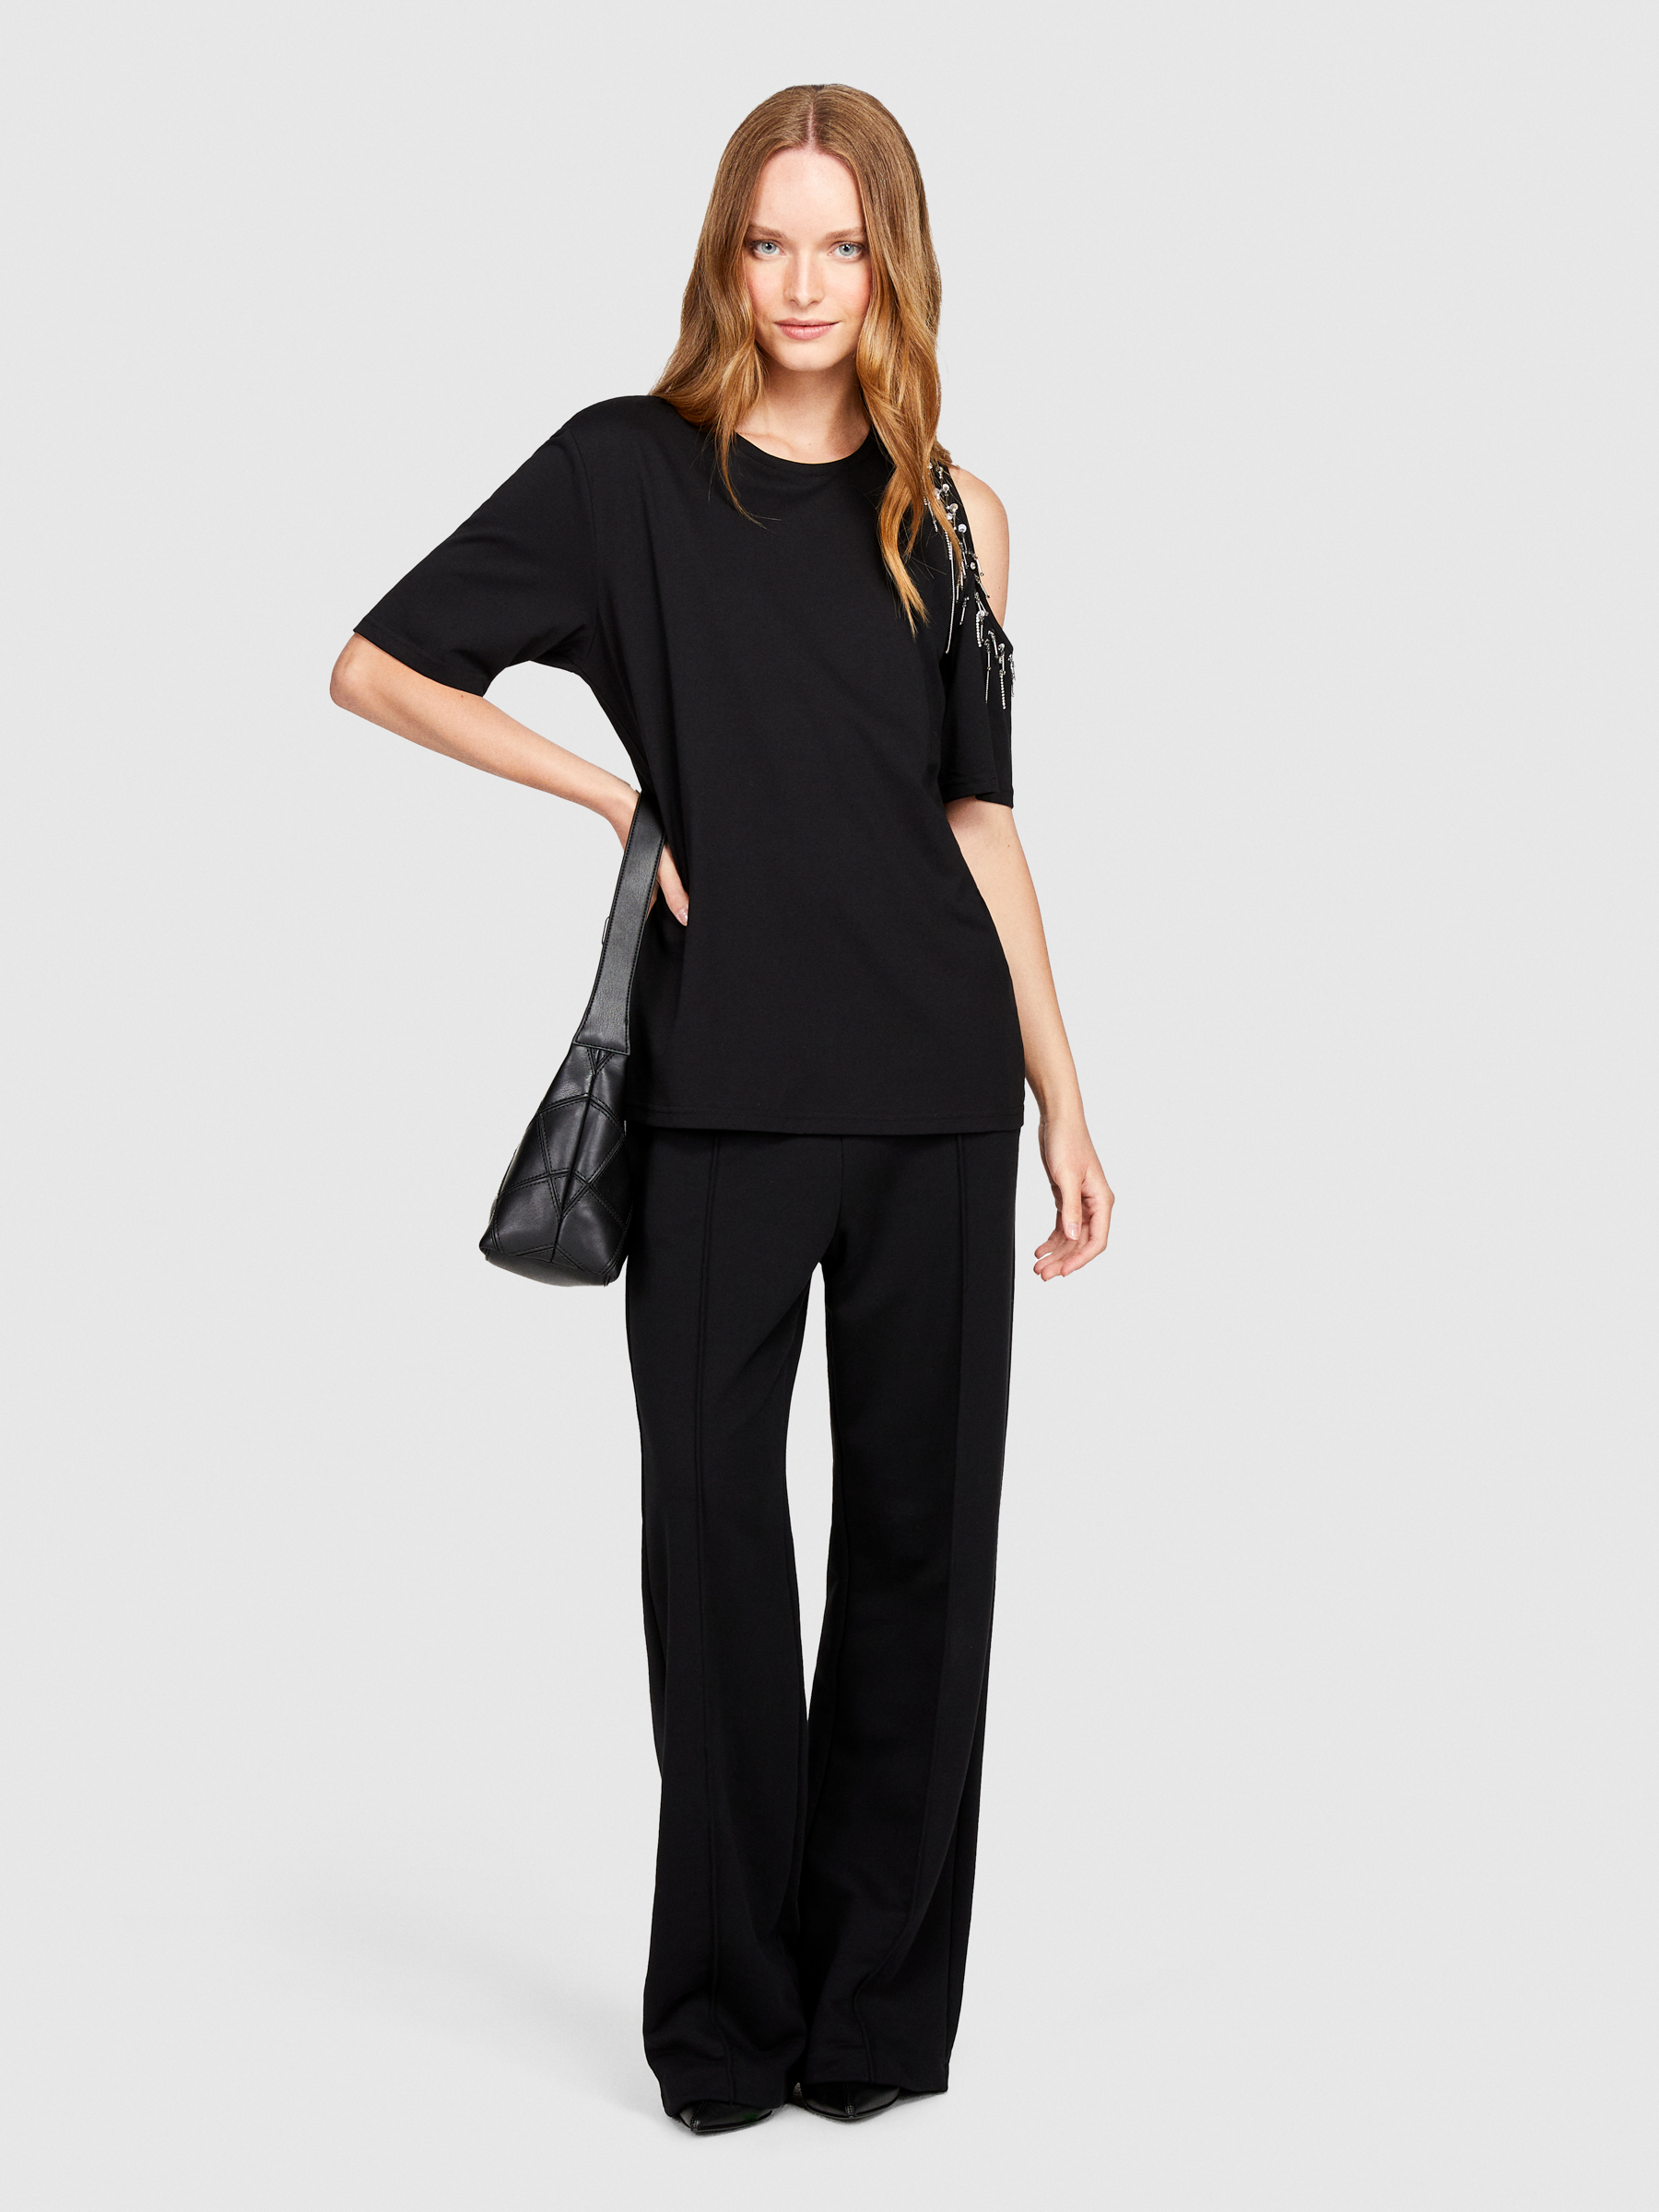 Sisley - T-shirt With Porthole, Woman, Black, Size: M